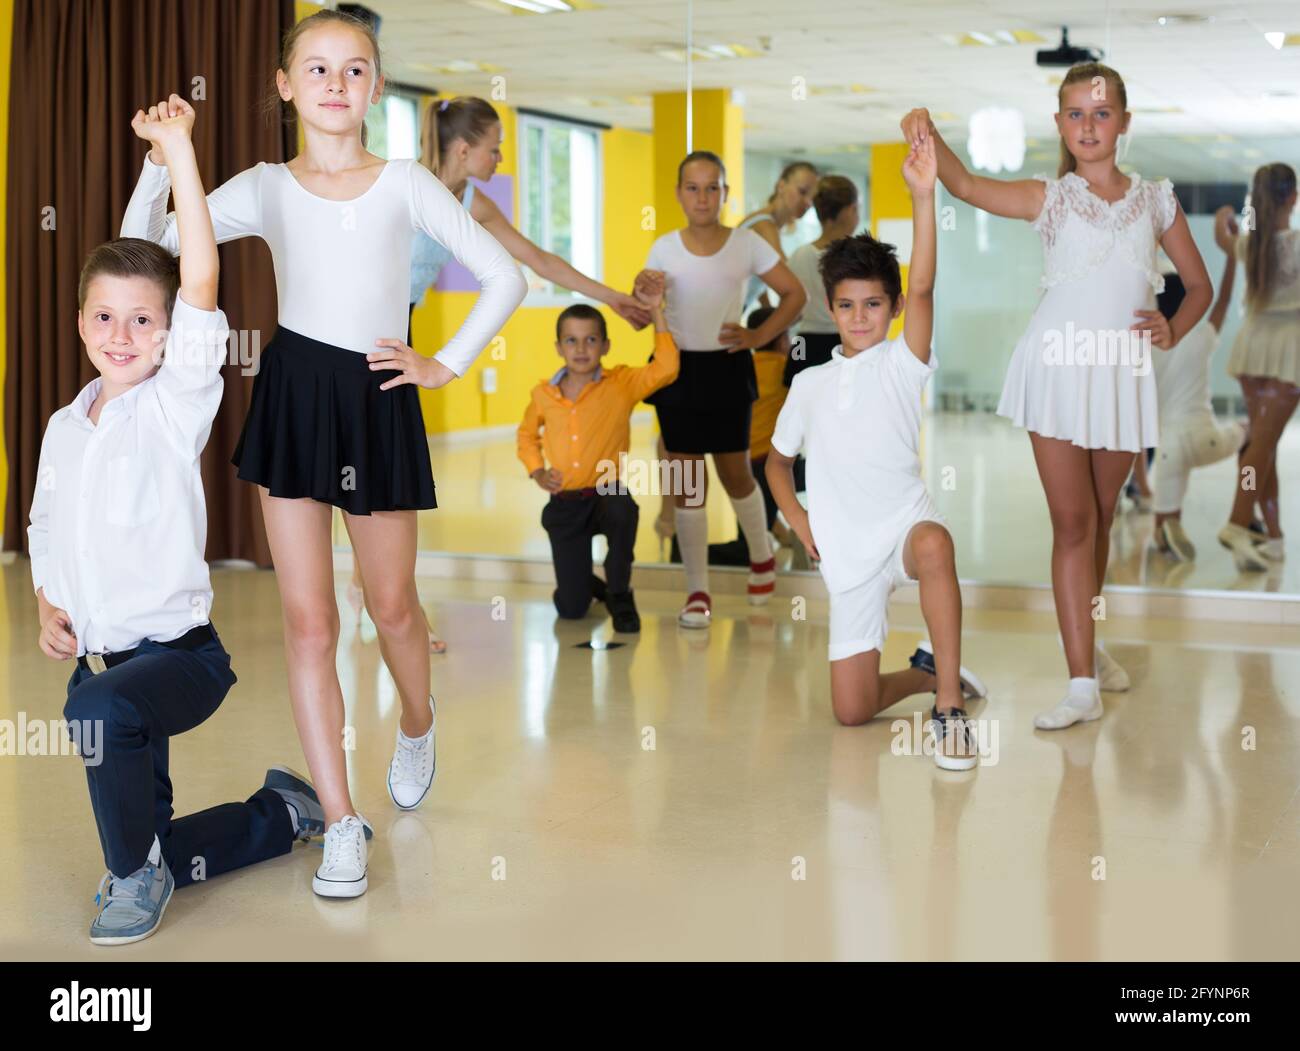 les enfants souriants dansent en couple en classe Banque D'Images